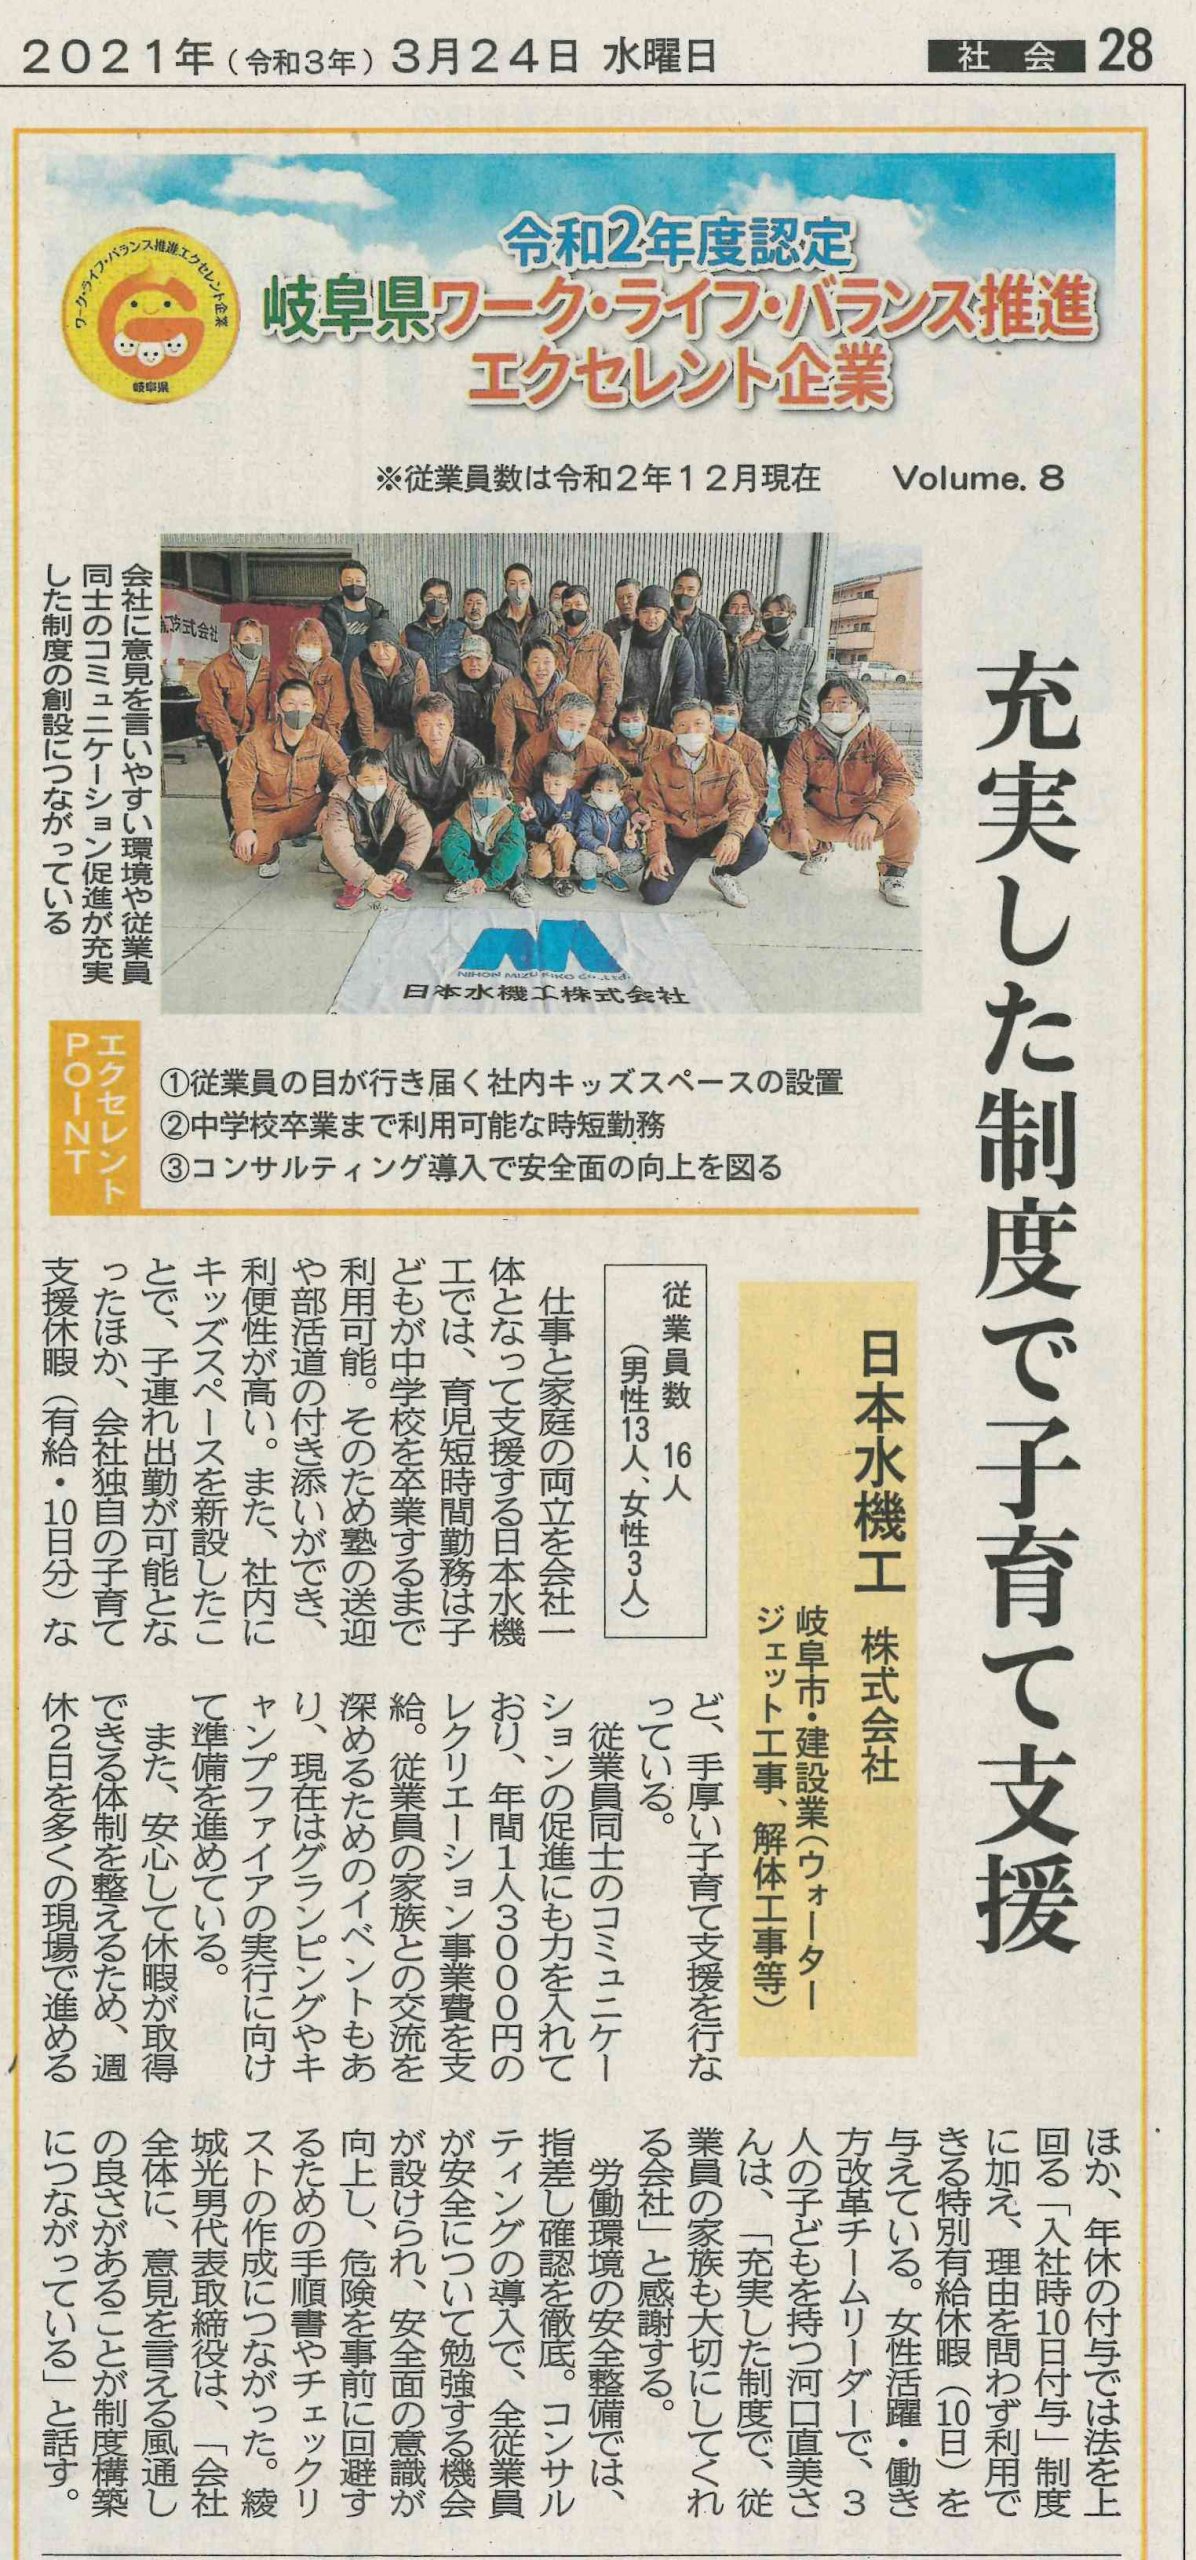 岐阜県ワーク・ライフ・バランス推進エクセレント企業として岐阜新聞に掲載されました